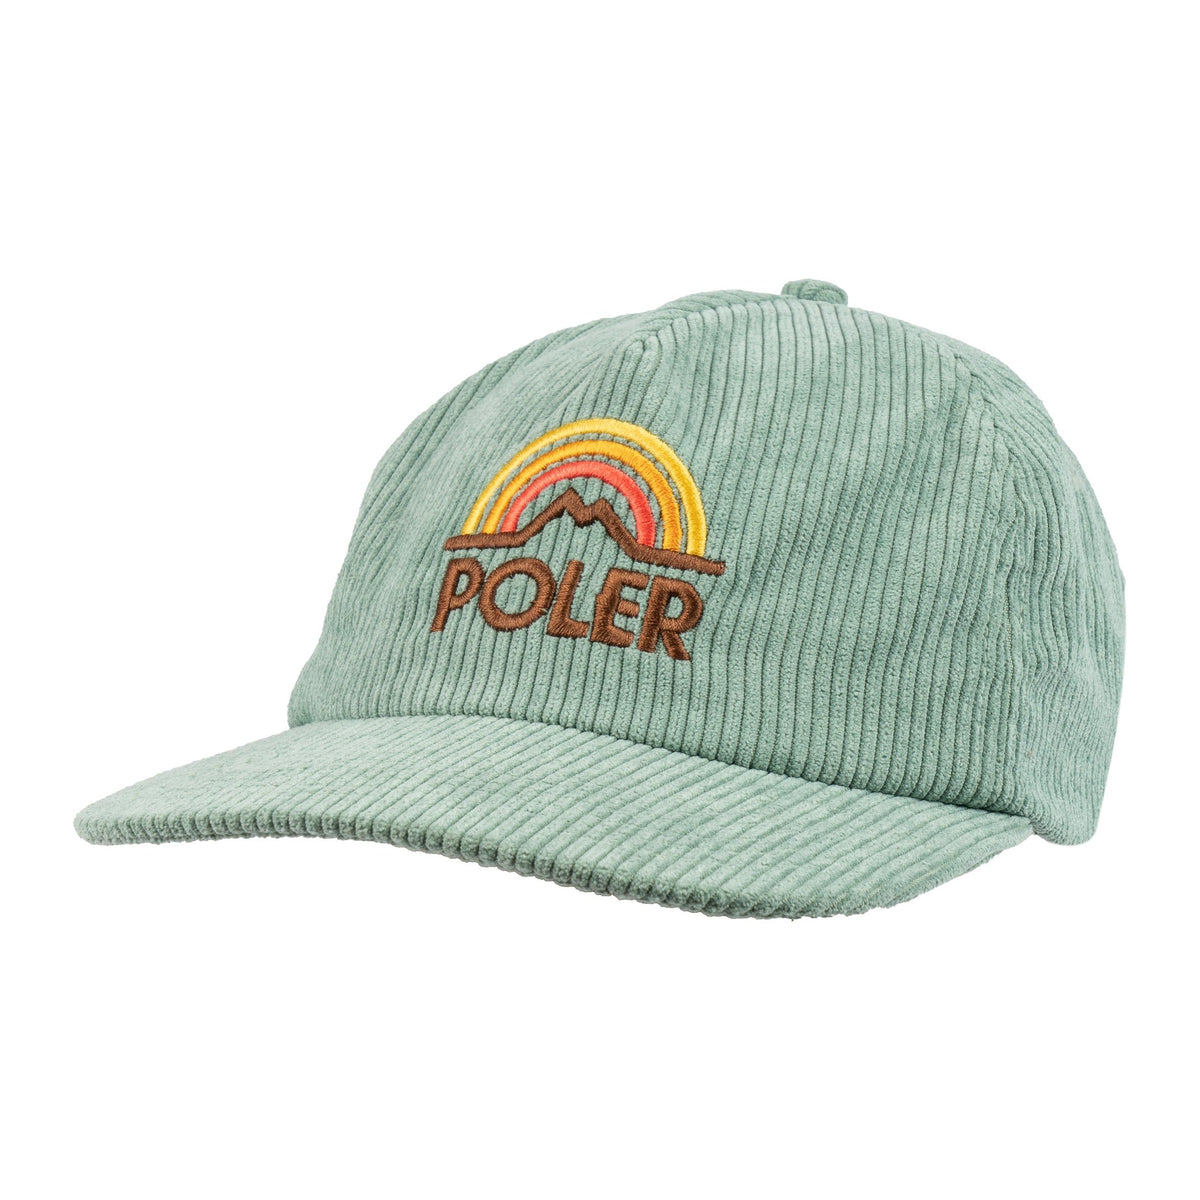 Poler Coastal Floppy Baseball Hat in Green for Men